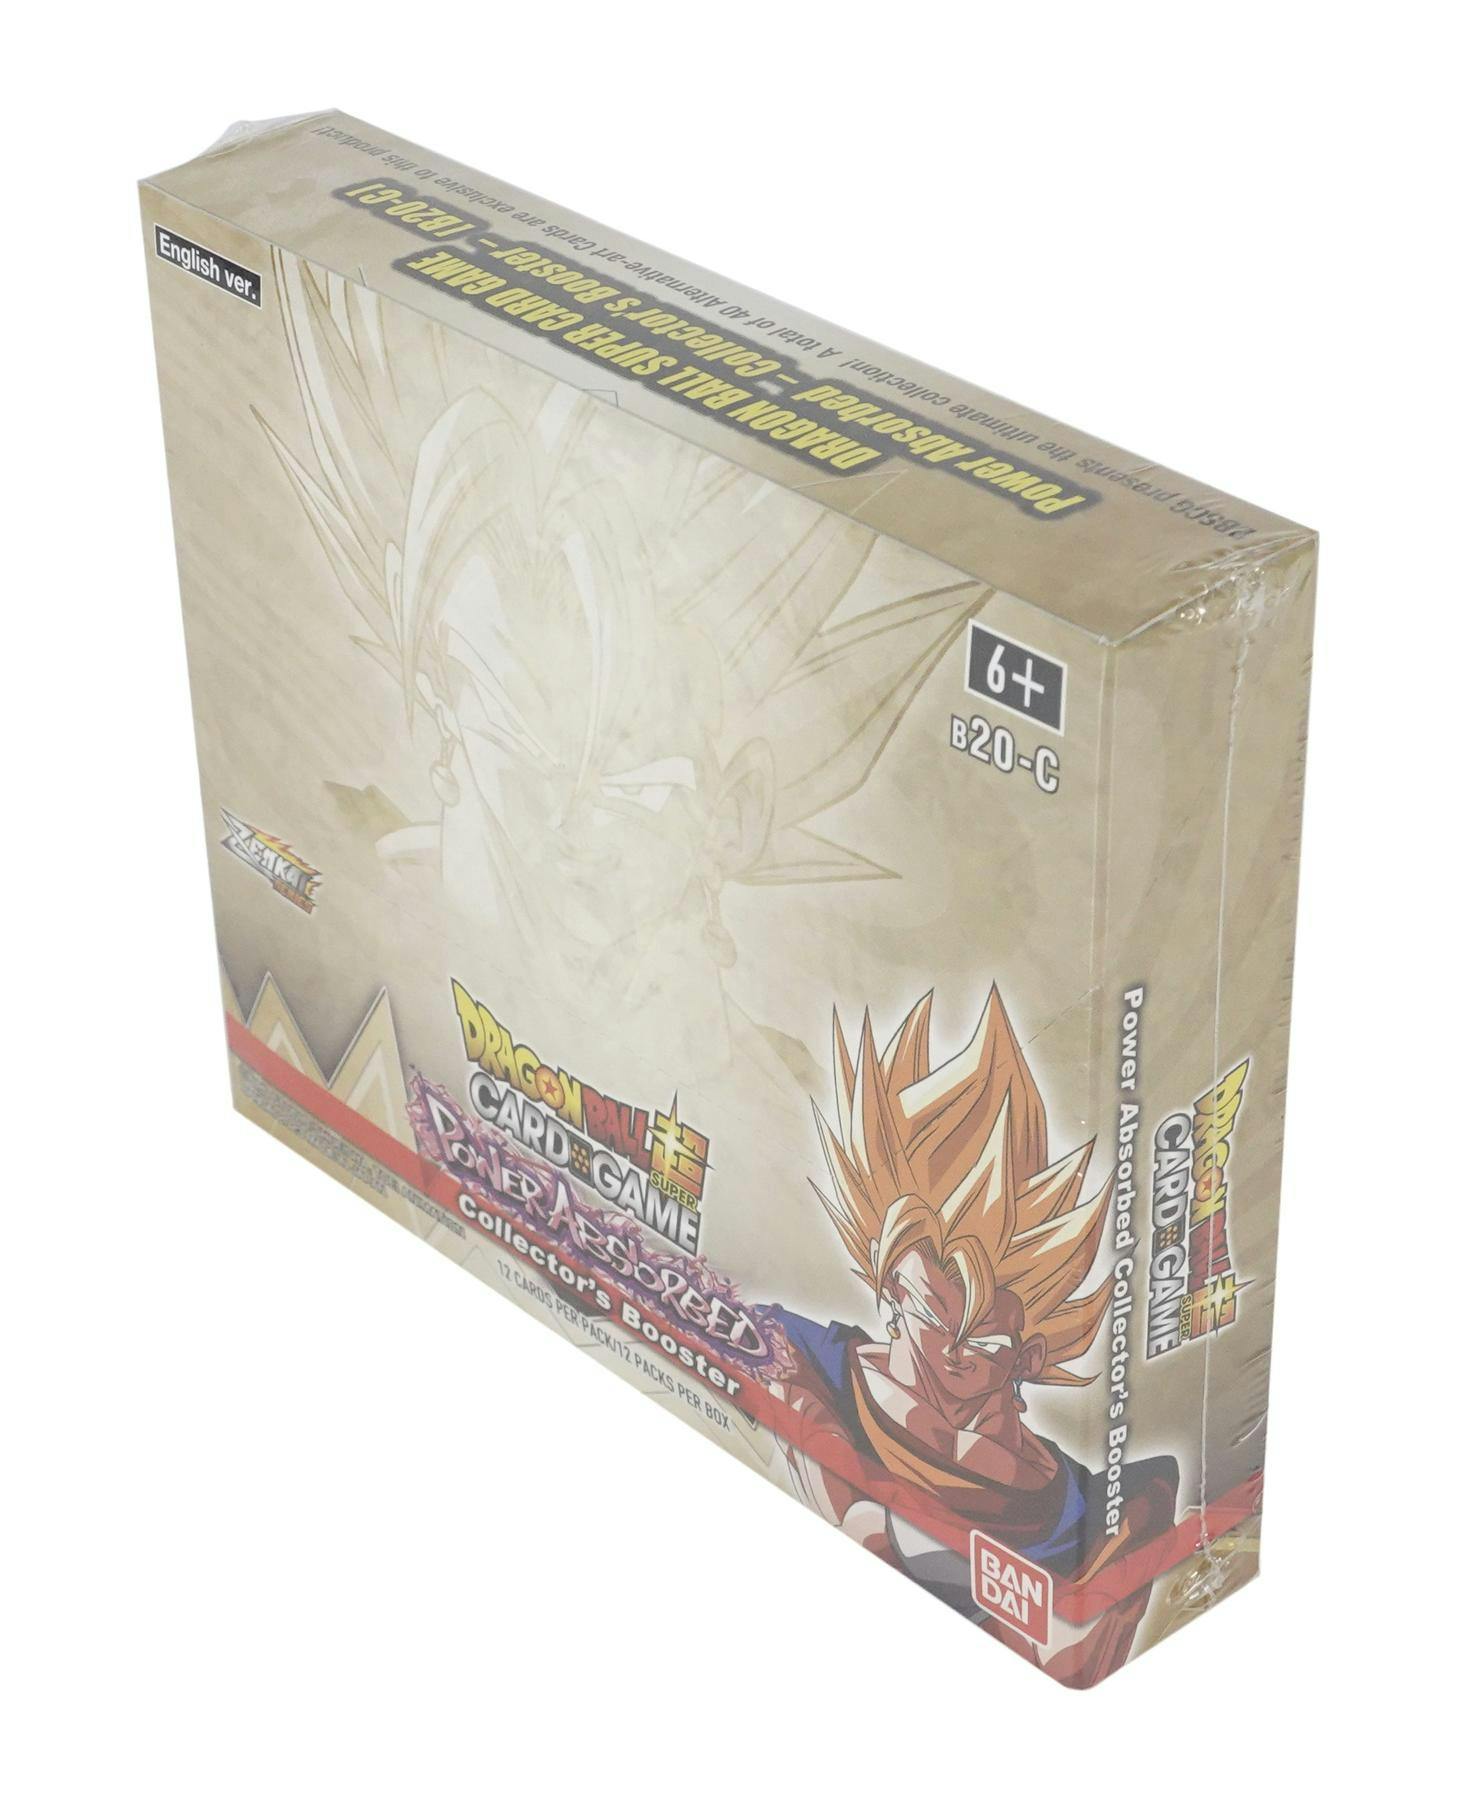 Dragon Ball Z: Awakening Blister Booster Box $79